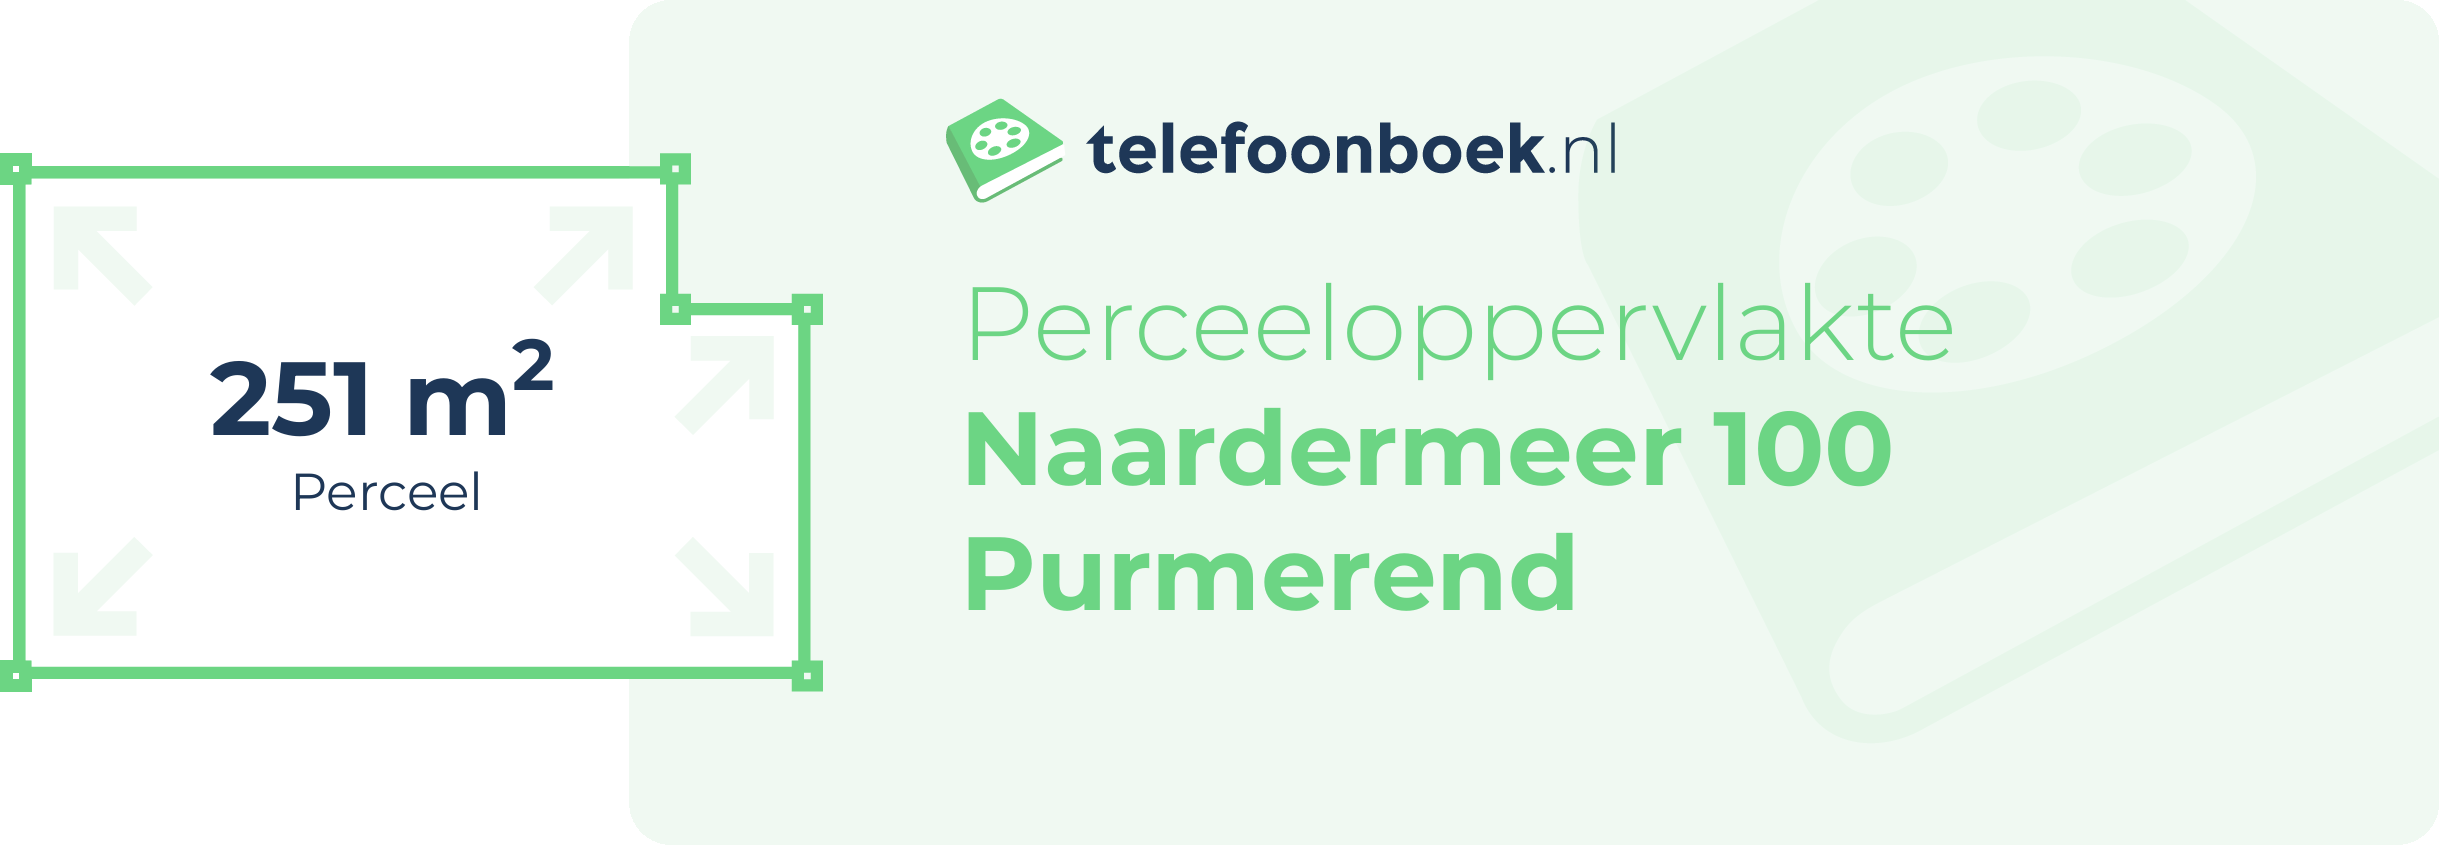 Perceeloppervlakte Naardermeer 100 Purmerend